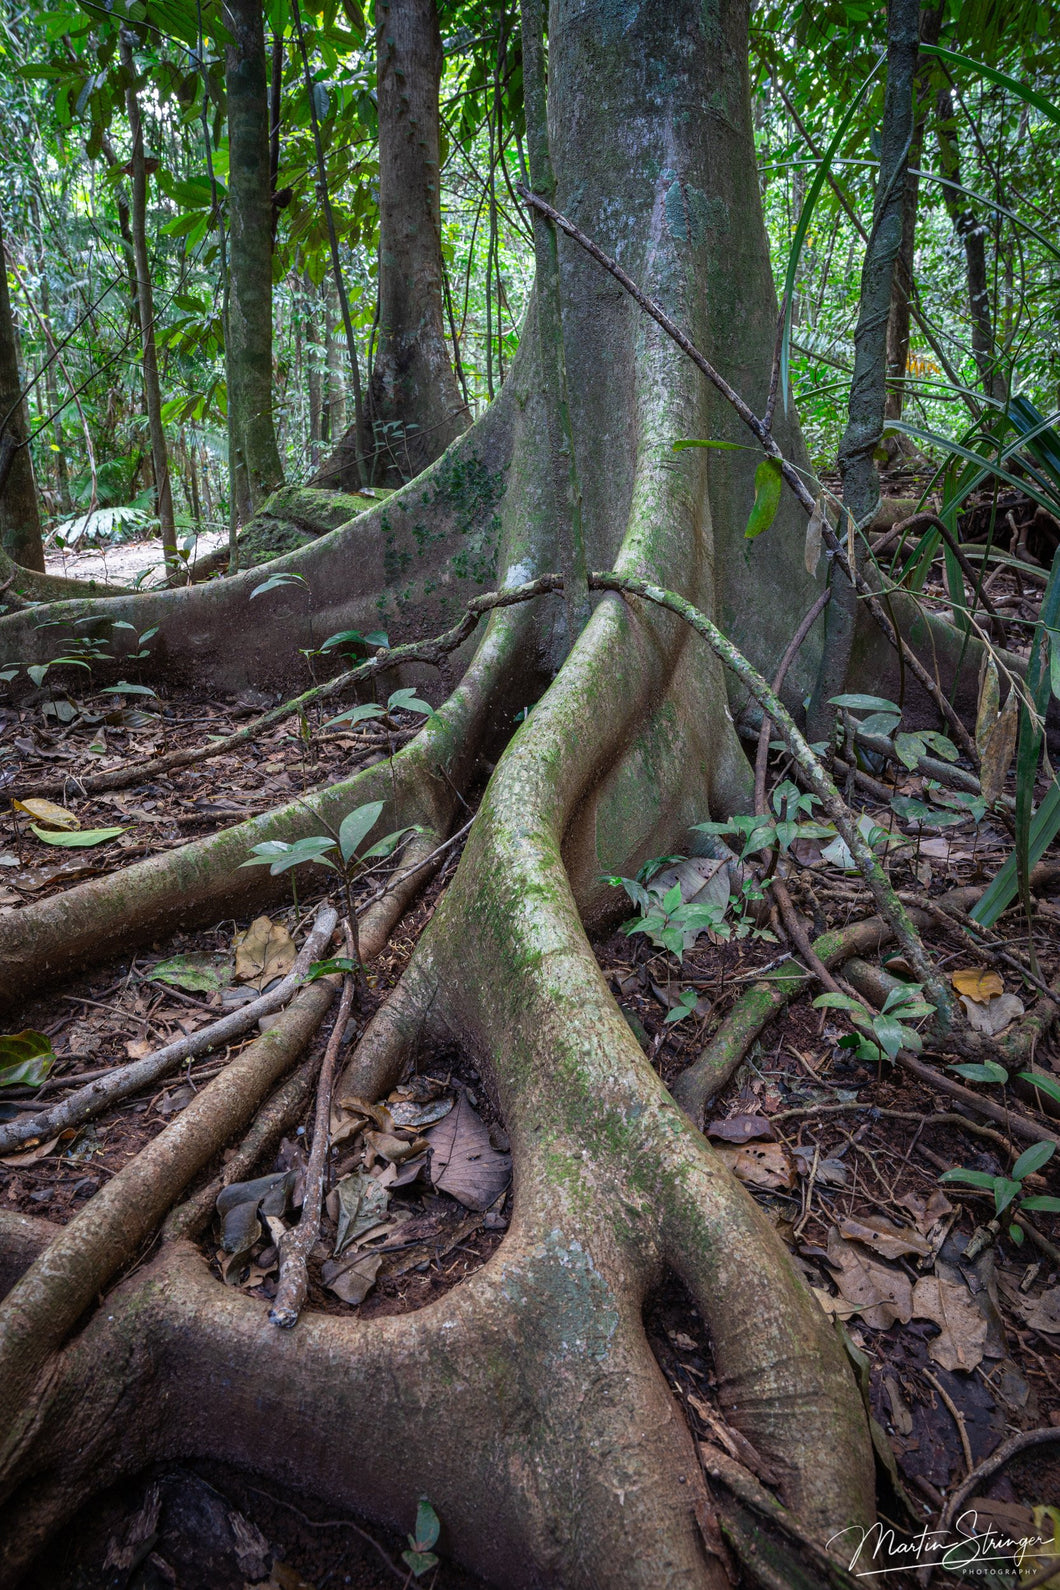 Rainforest Roots